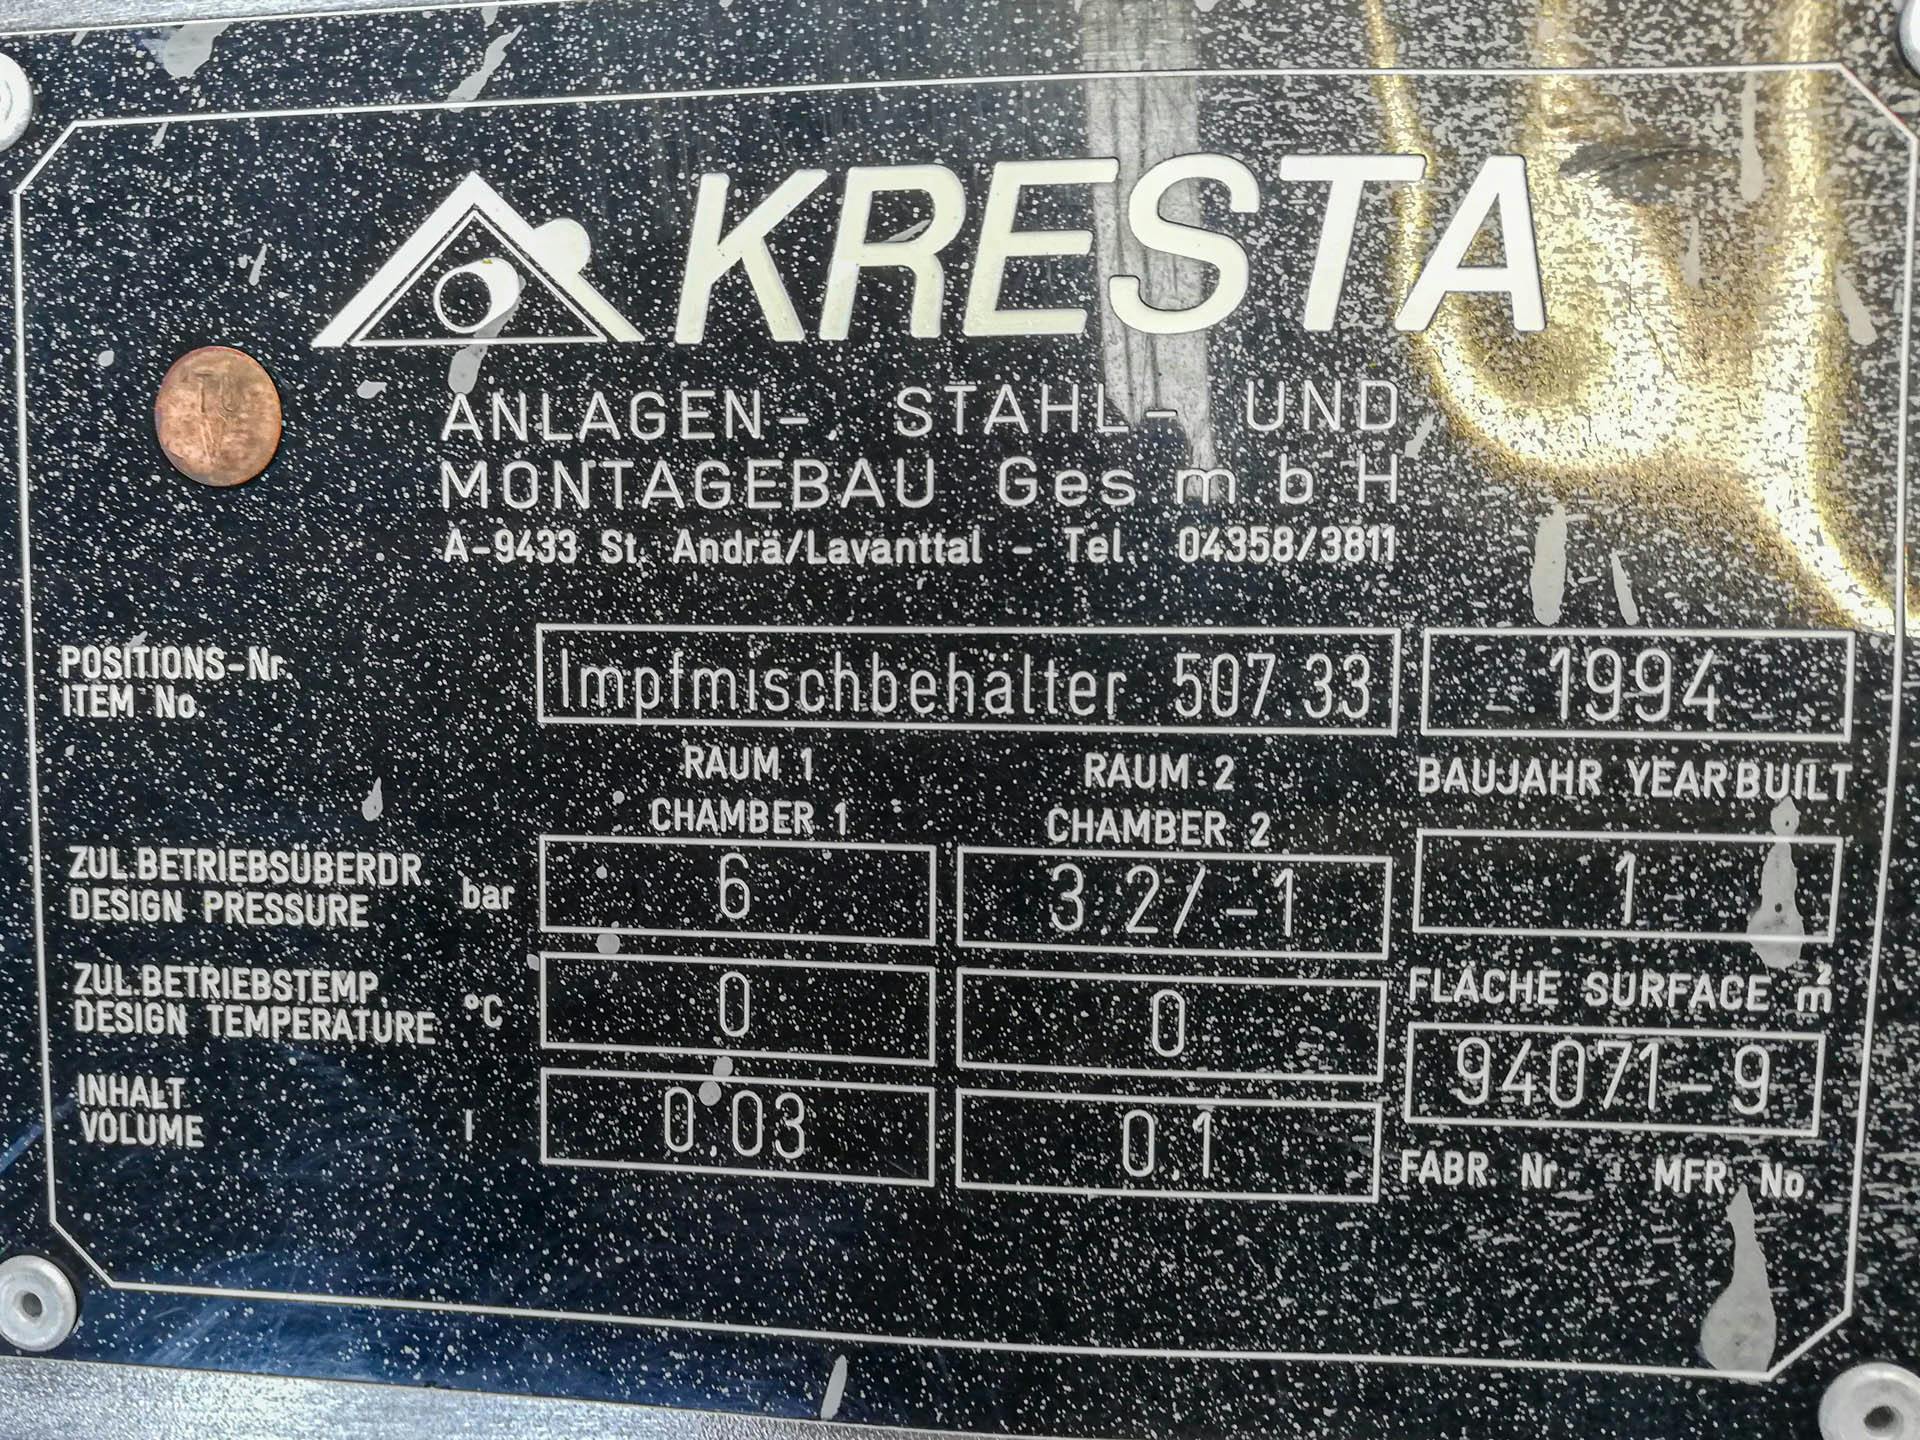 Kresta 150 Ltr - Recipiente de presión - image 4